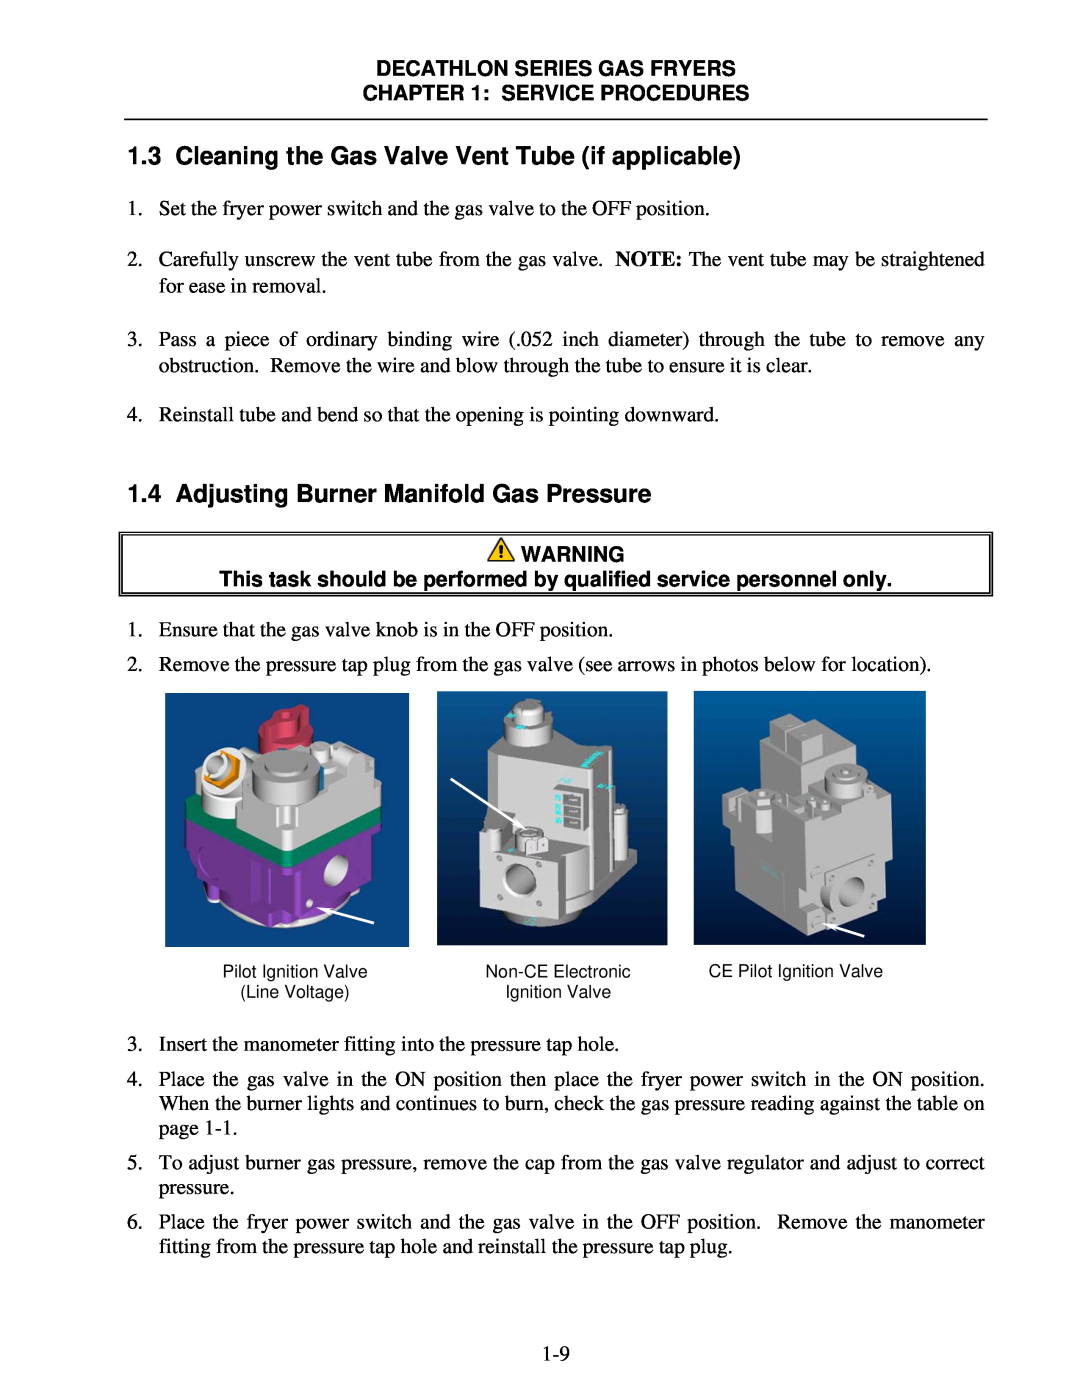 Frymaster FPD, SCFD manual Adjusting Burner Manifold Gas Pressure, Decathlon Series Gas Fryers, Service Procedures 